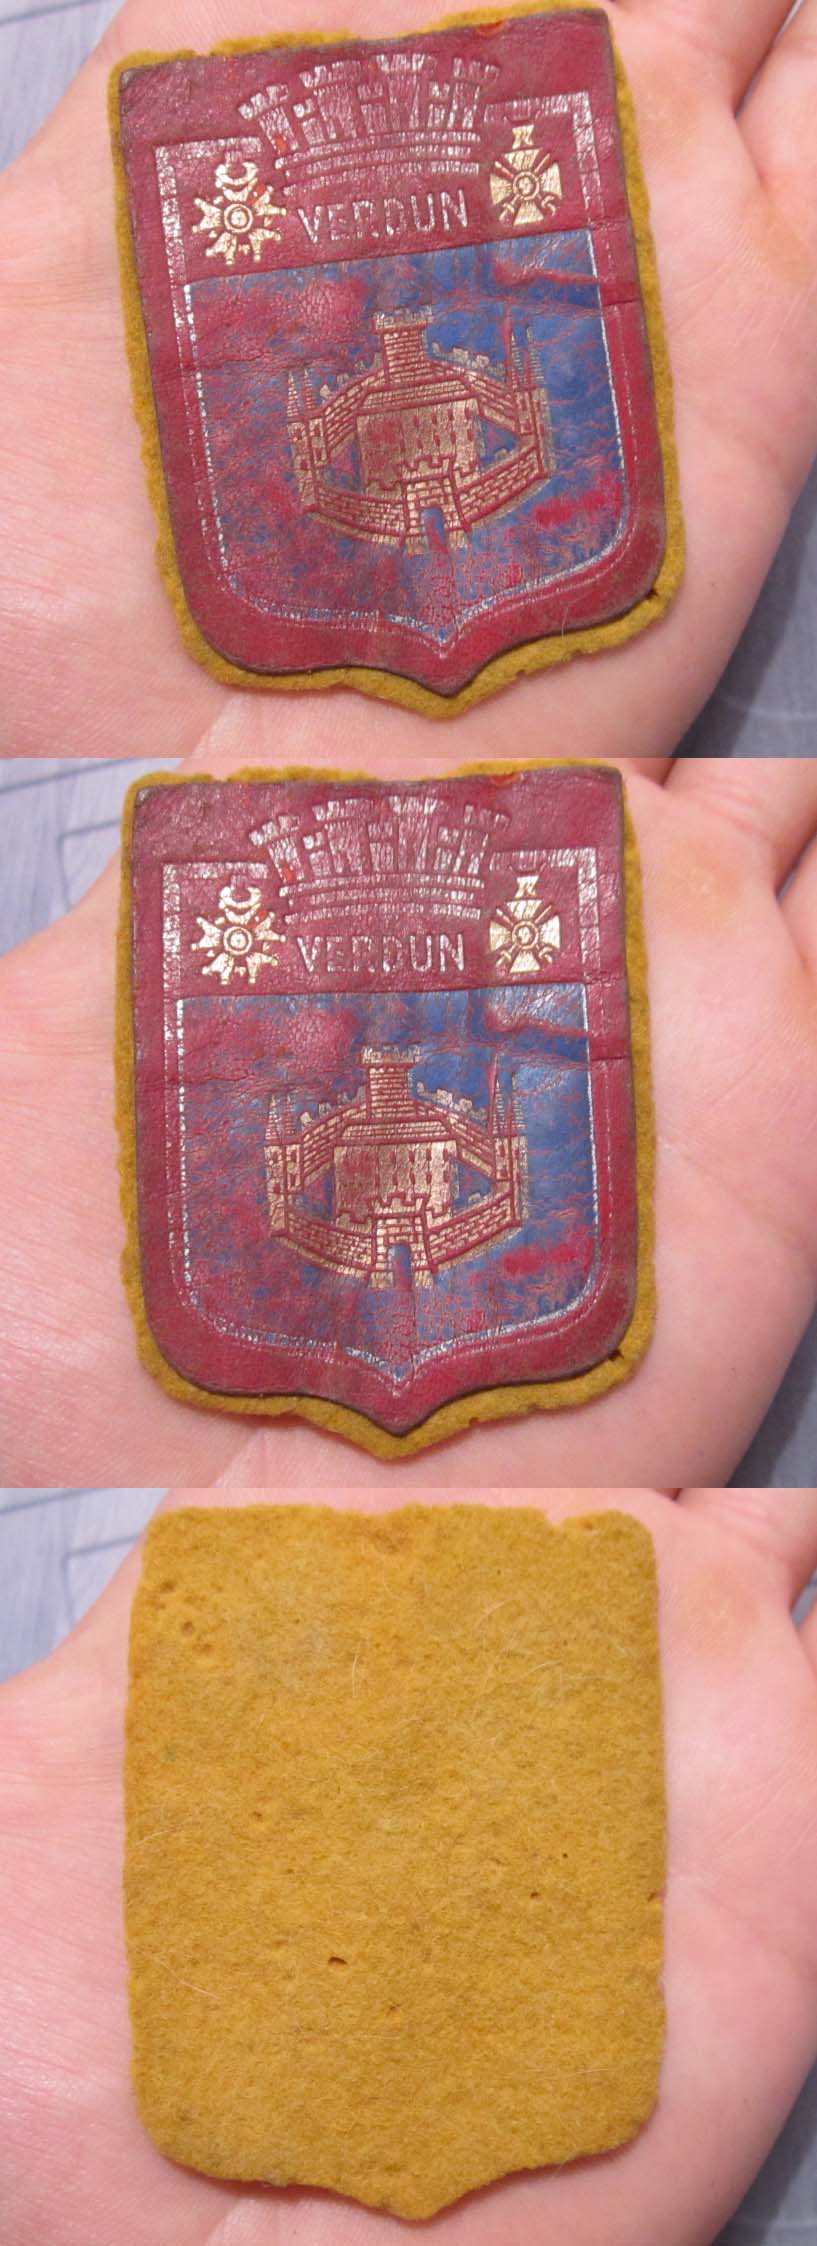 French Verdun Souvenir Patch